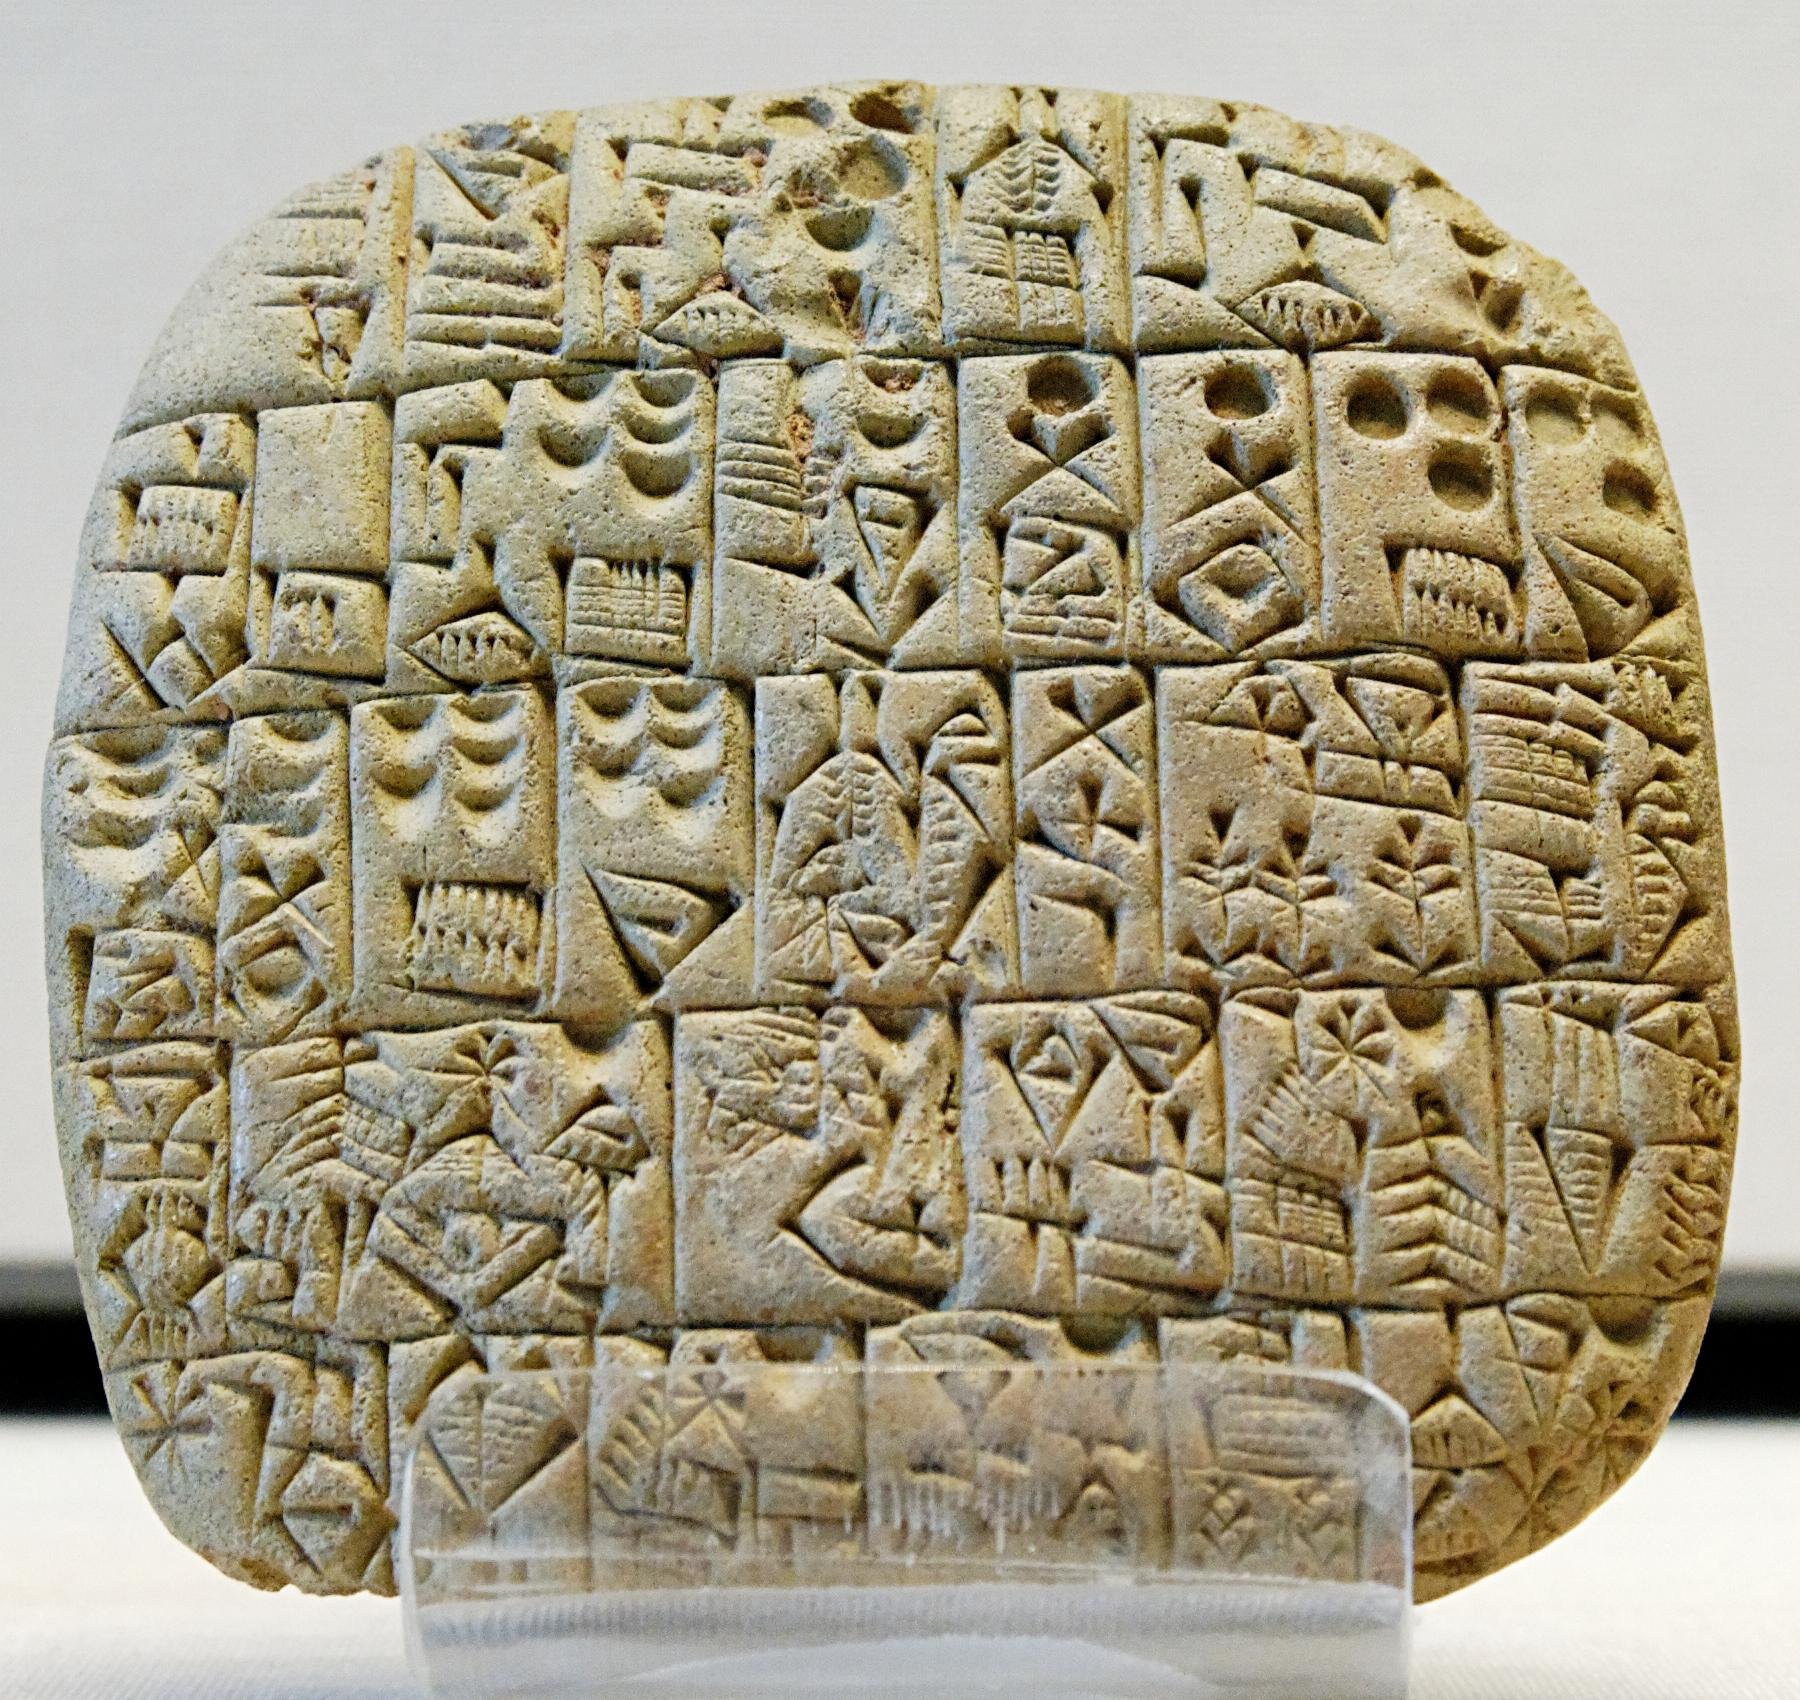 Exemplo de escrita cuneiforme. (Fonte: Wikipédia / Reprodução)